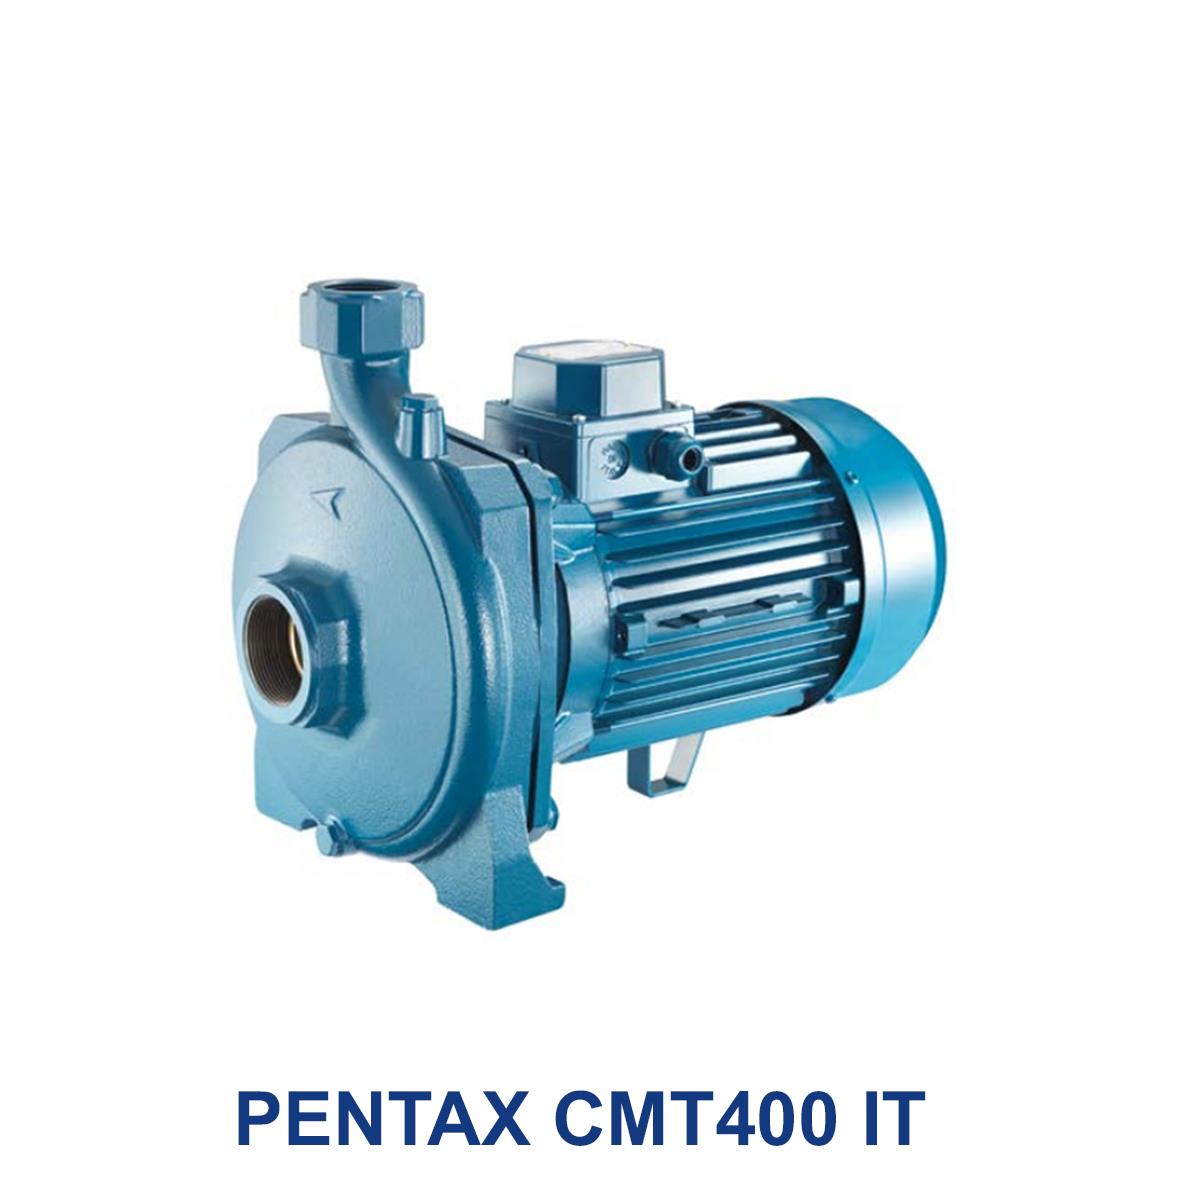 PENTAX-CMT400-IT